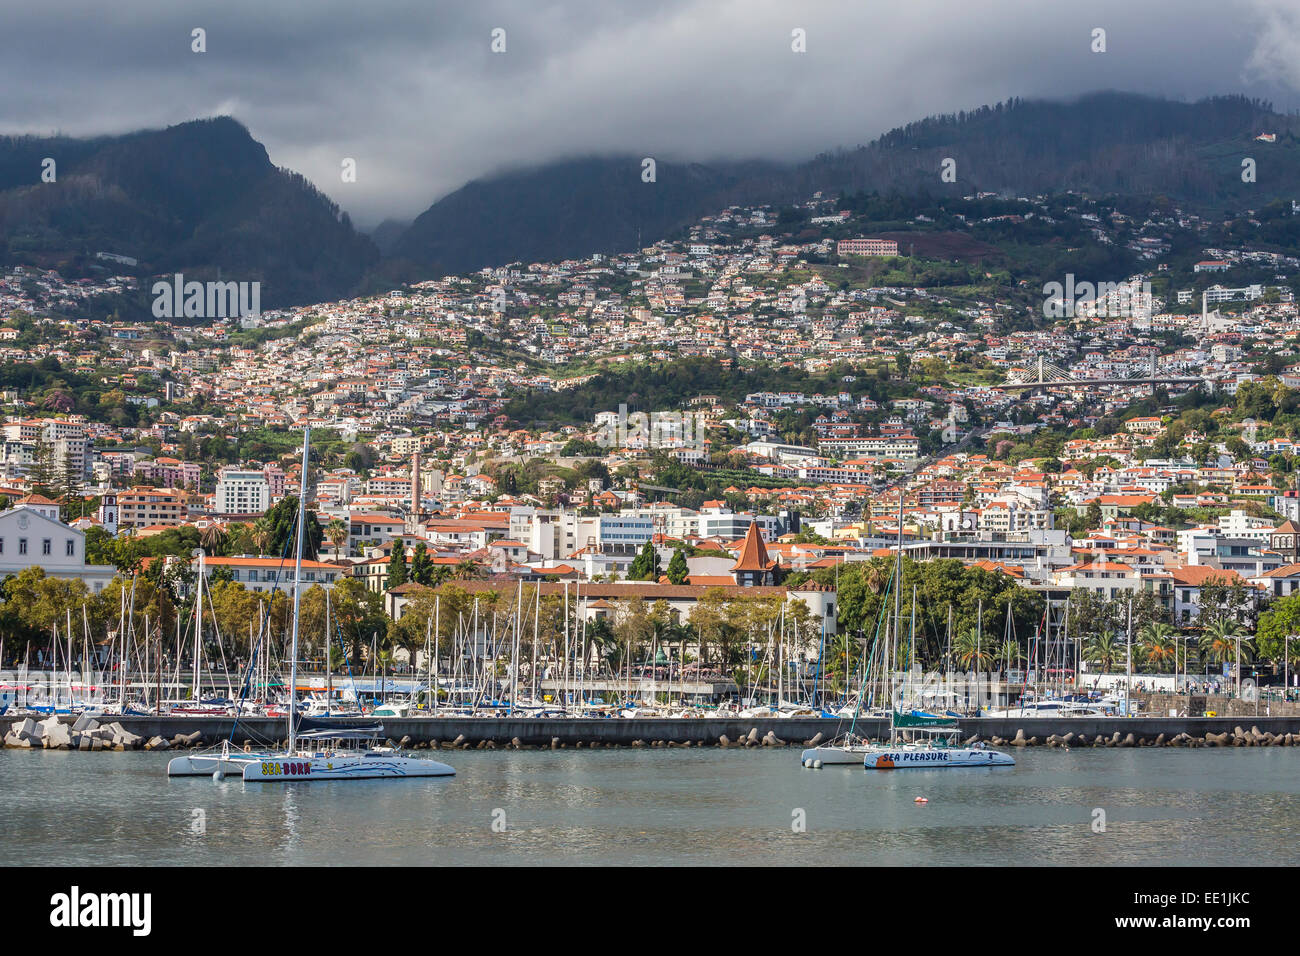 Vue front de mer, au coeur de la capitale de Funchal, Madeira, Portugal, Europe, Atlantique Banque D'Images